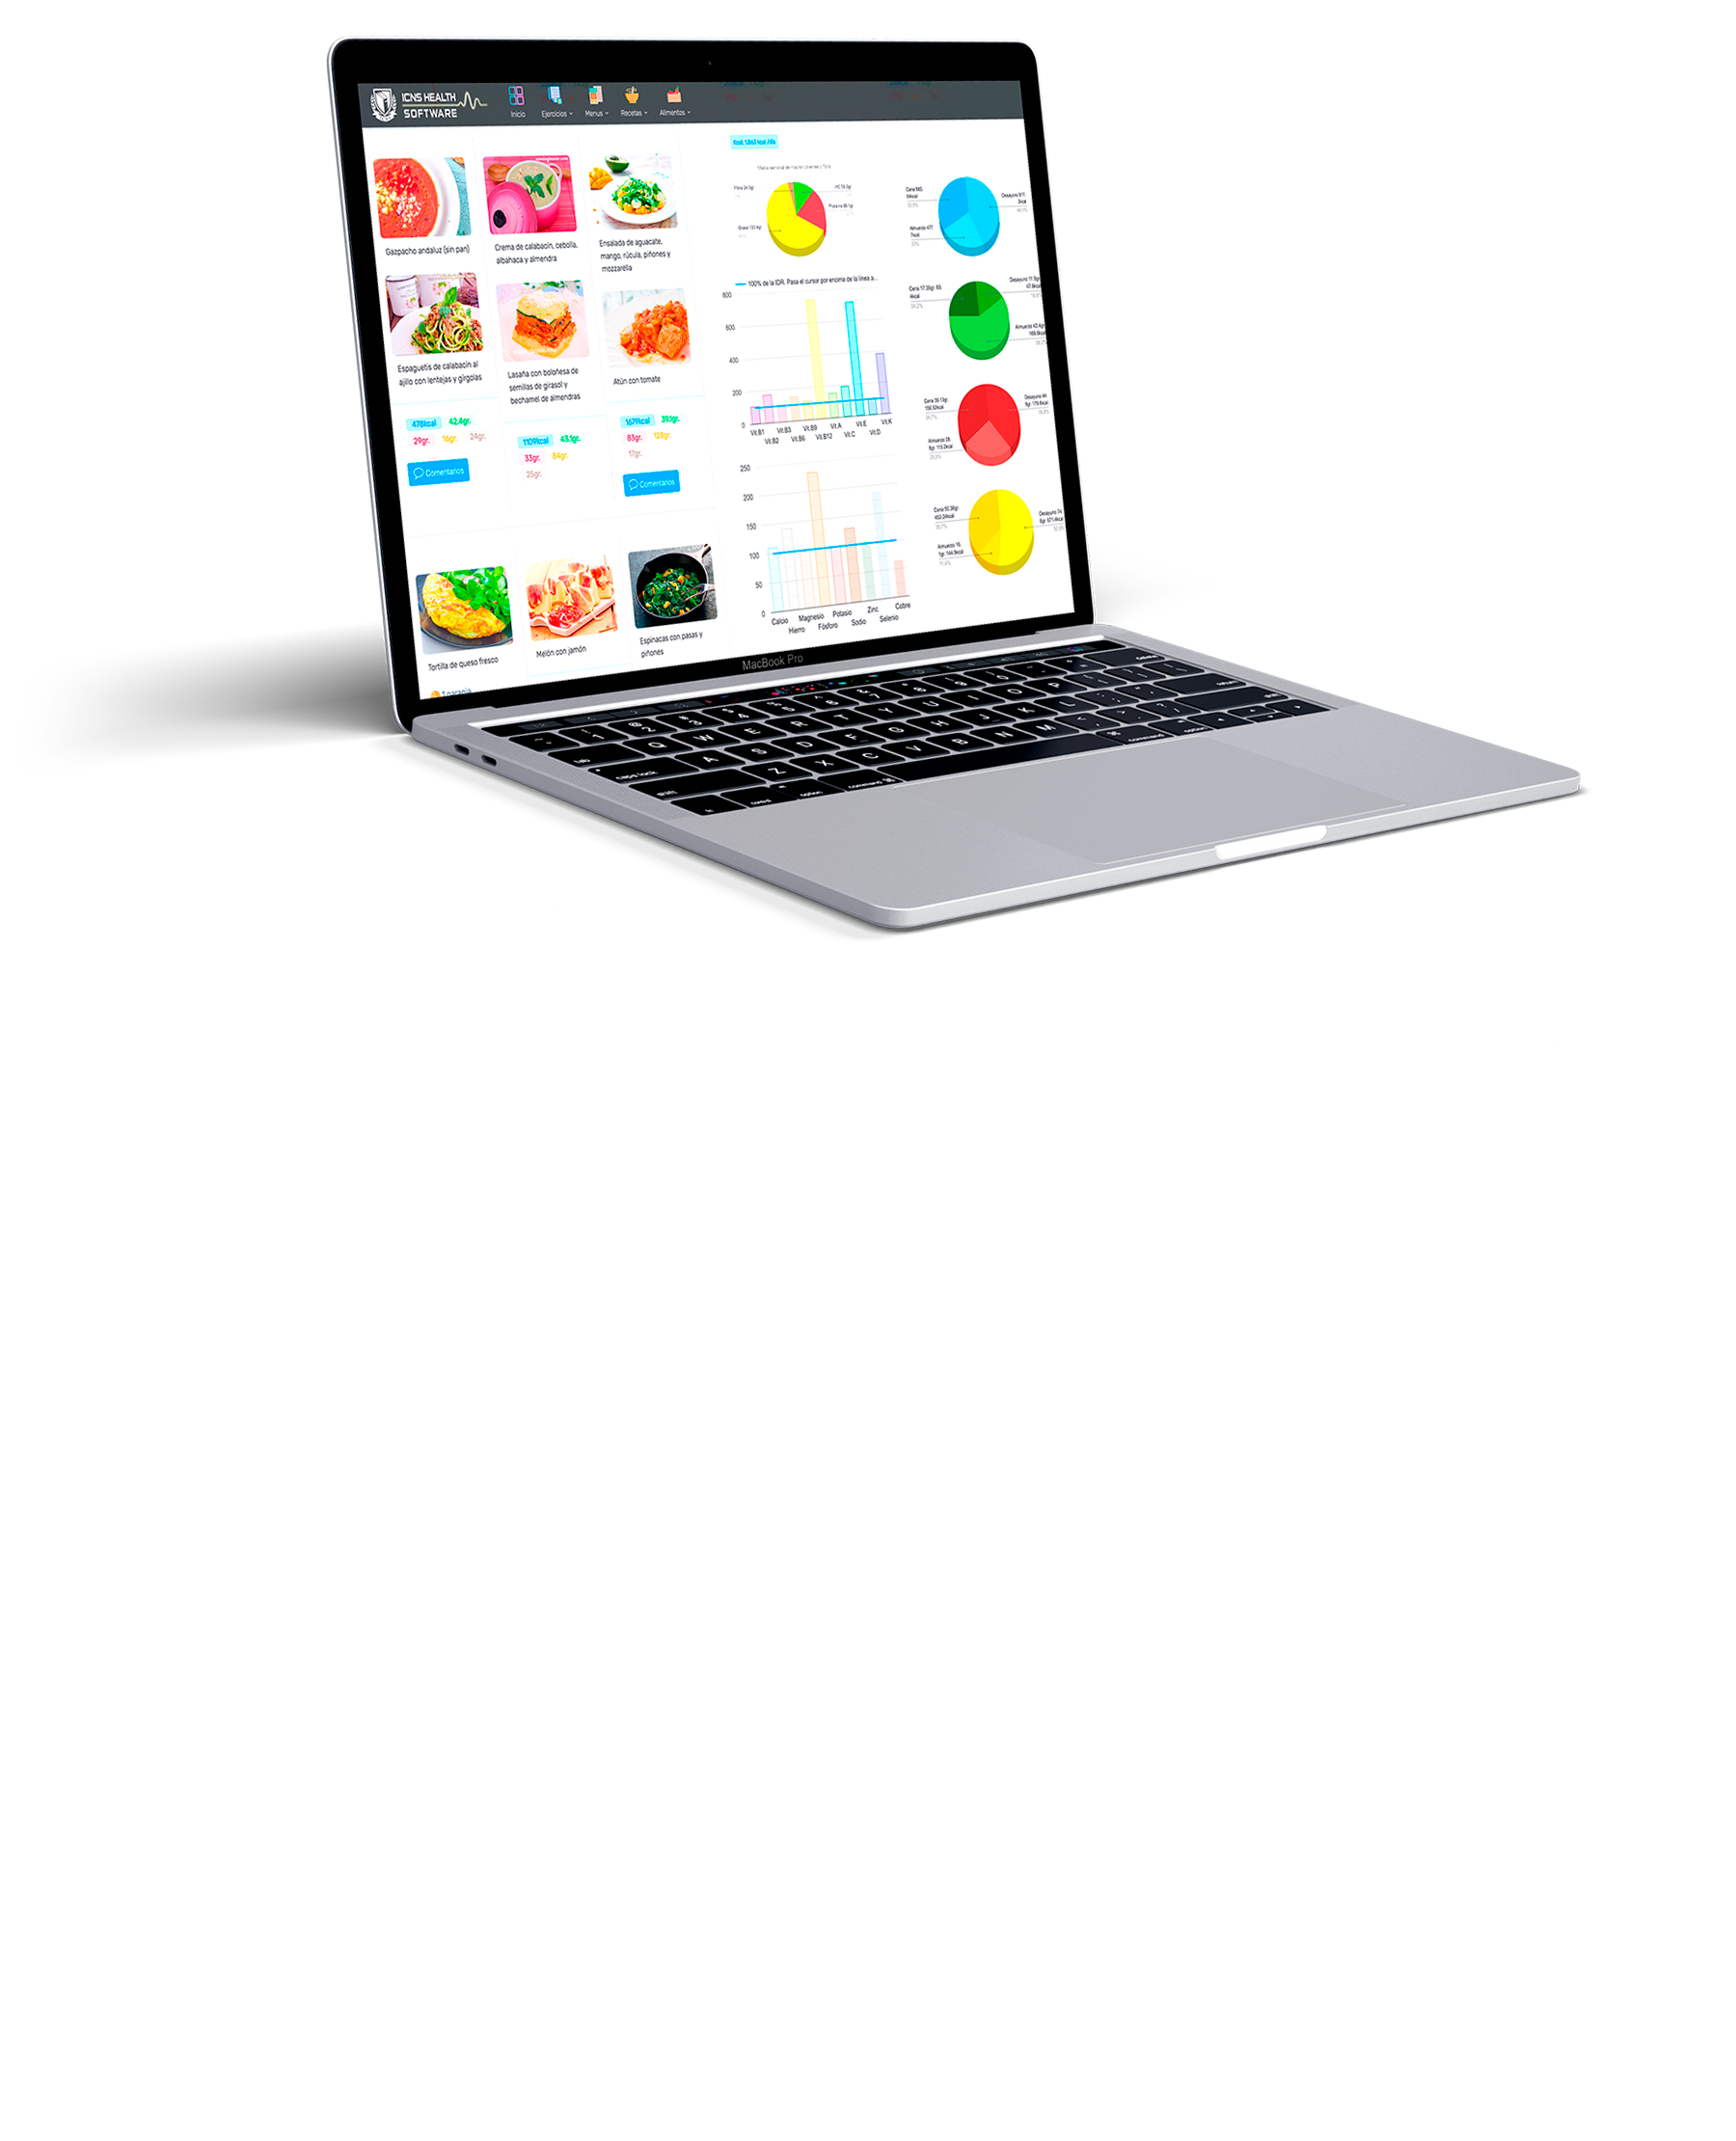 Ejercicios prácticos con ICNS Health Software